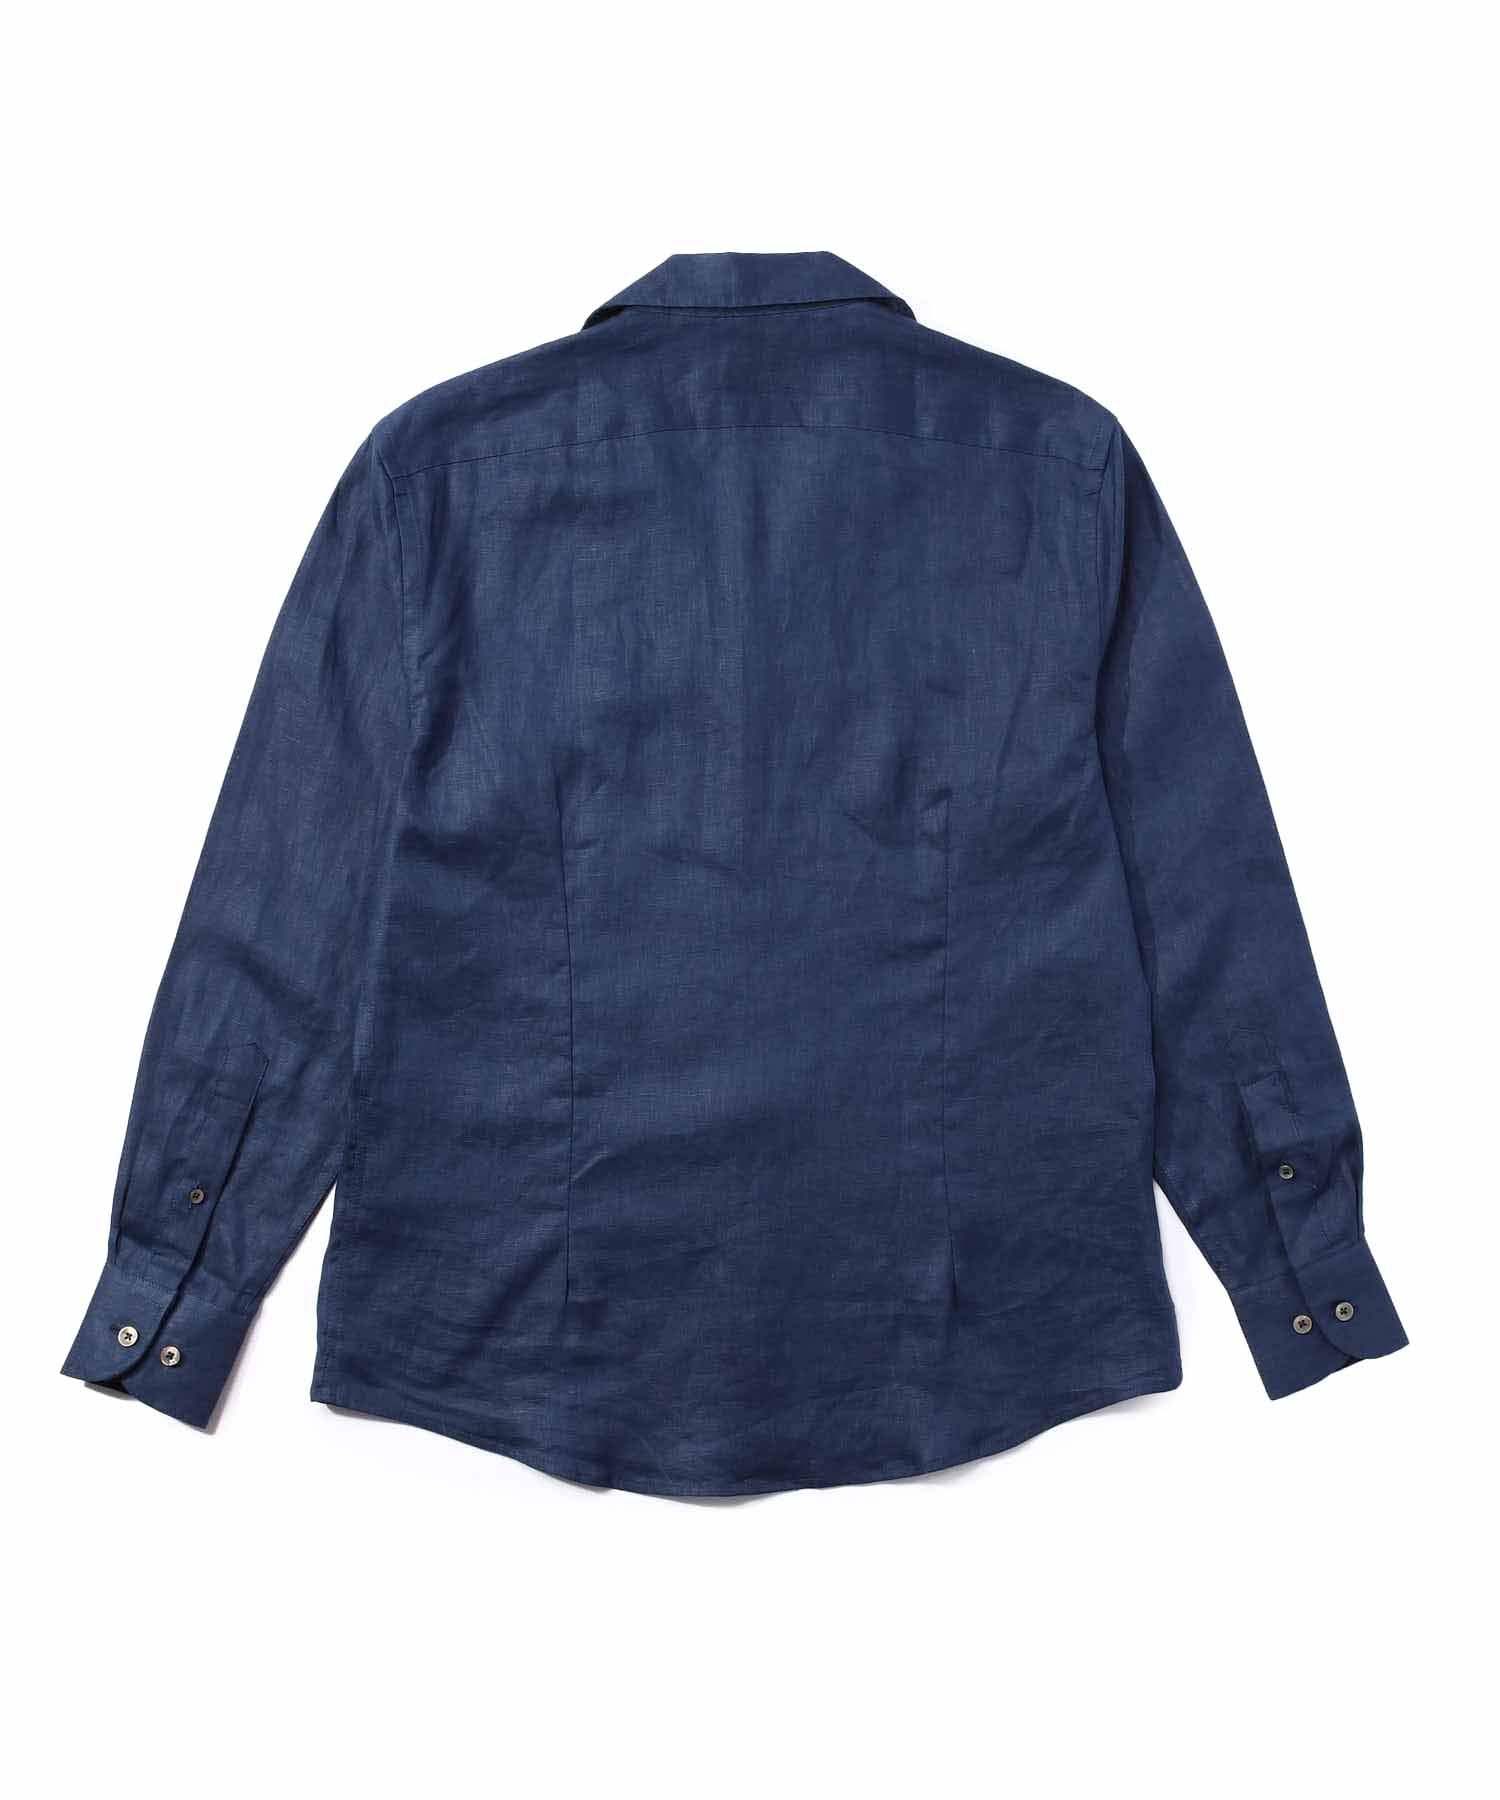 リネンオープンカラーシャツ[Blue]